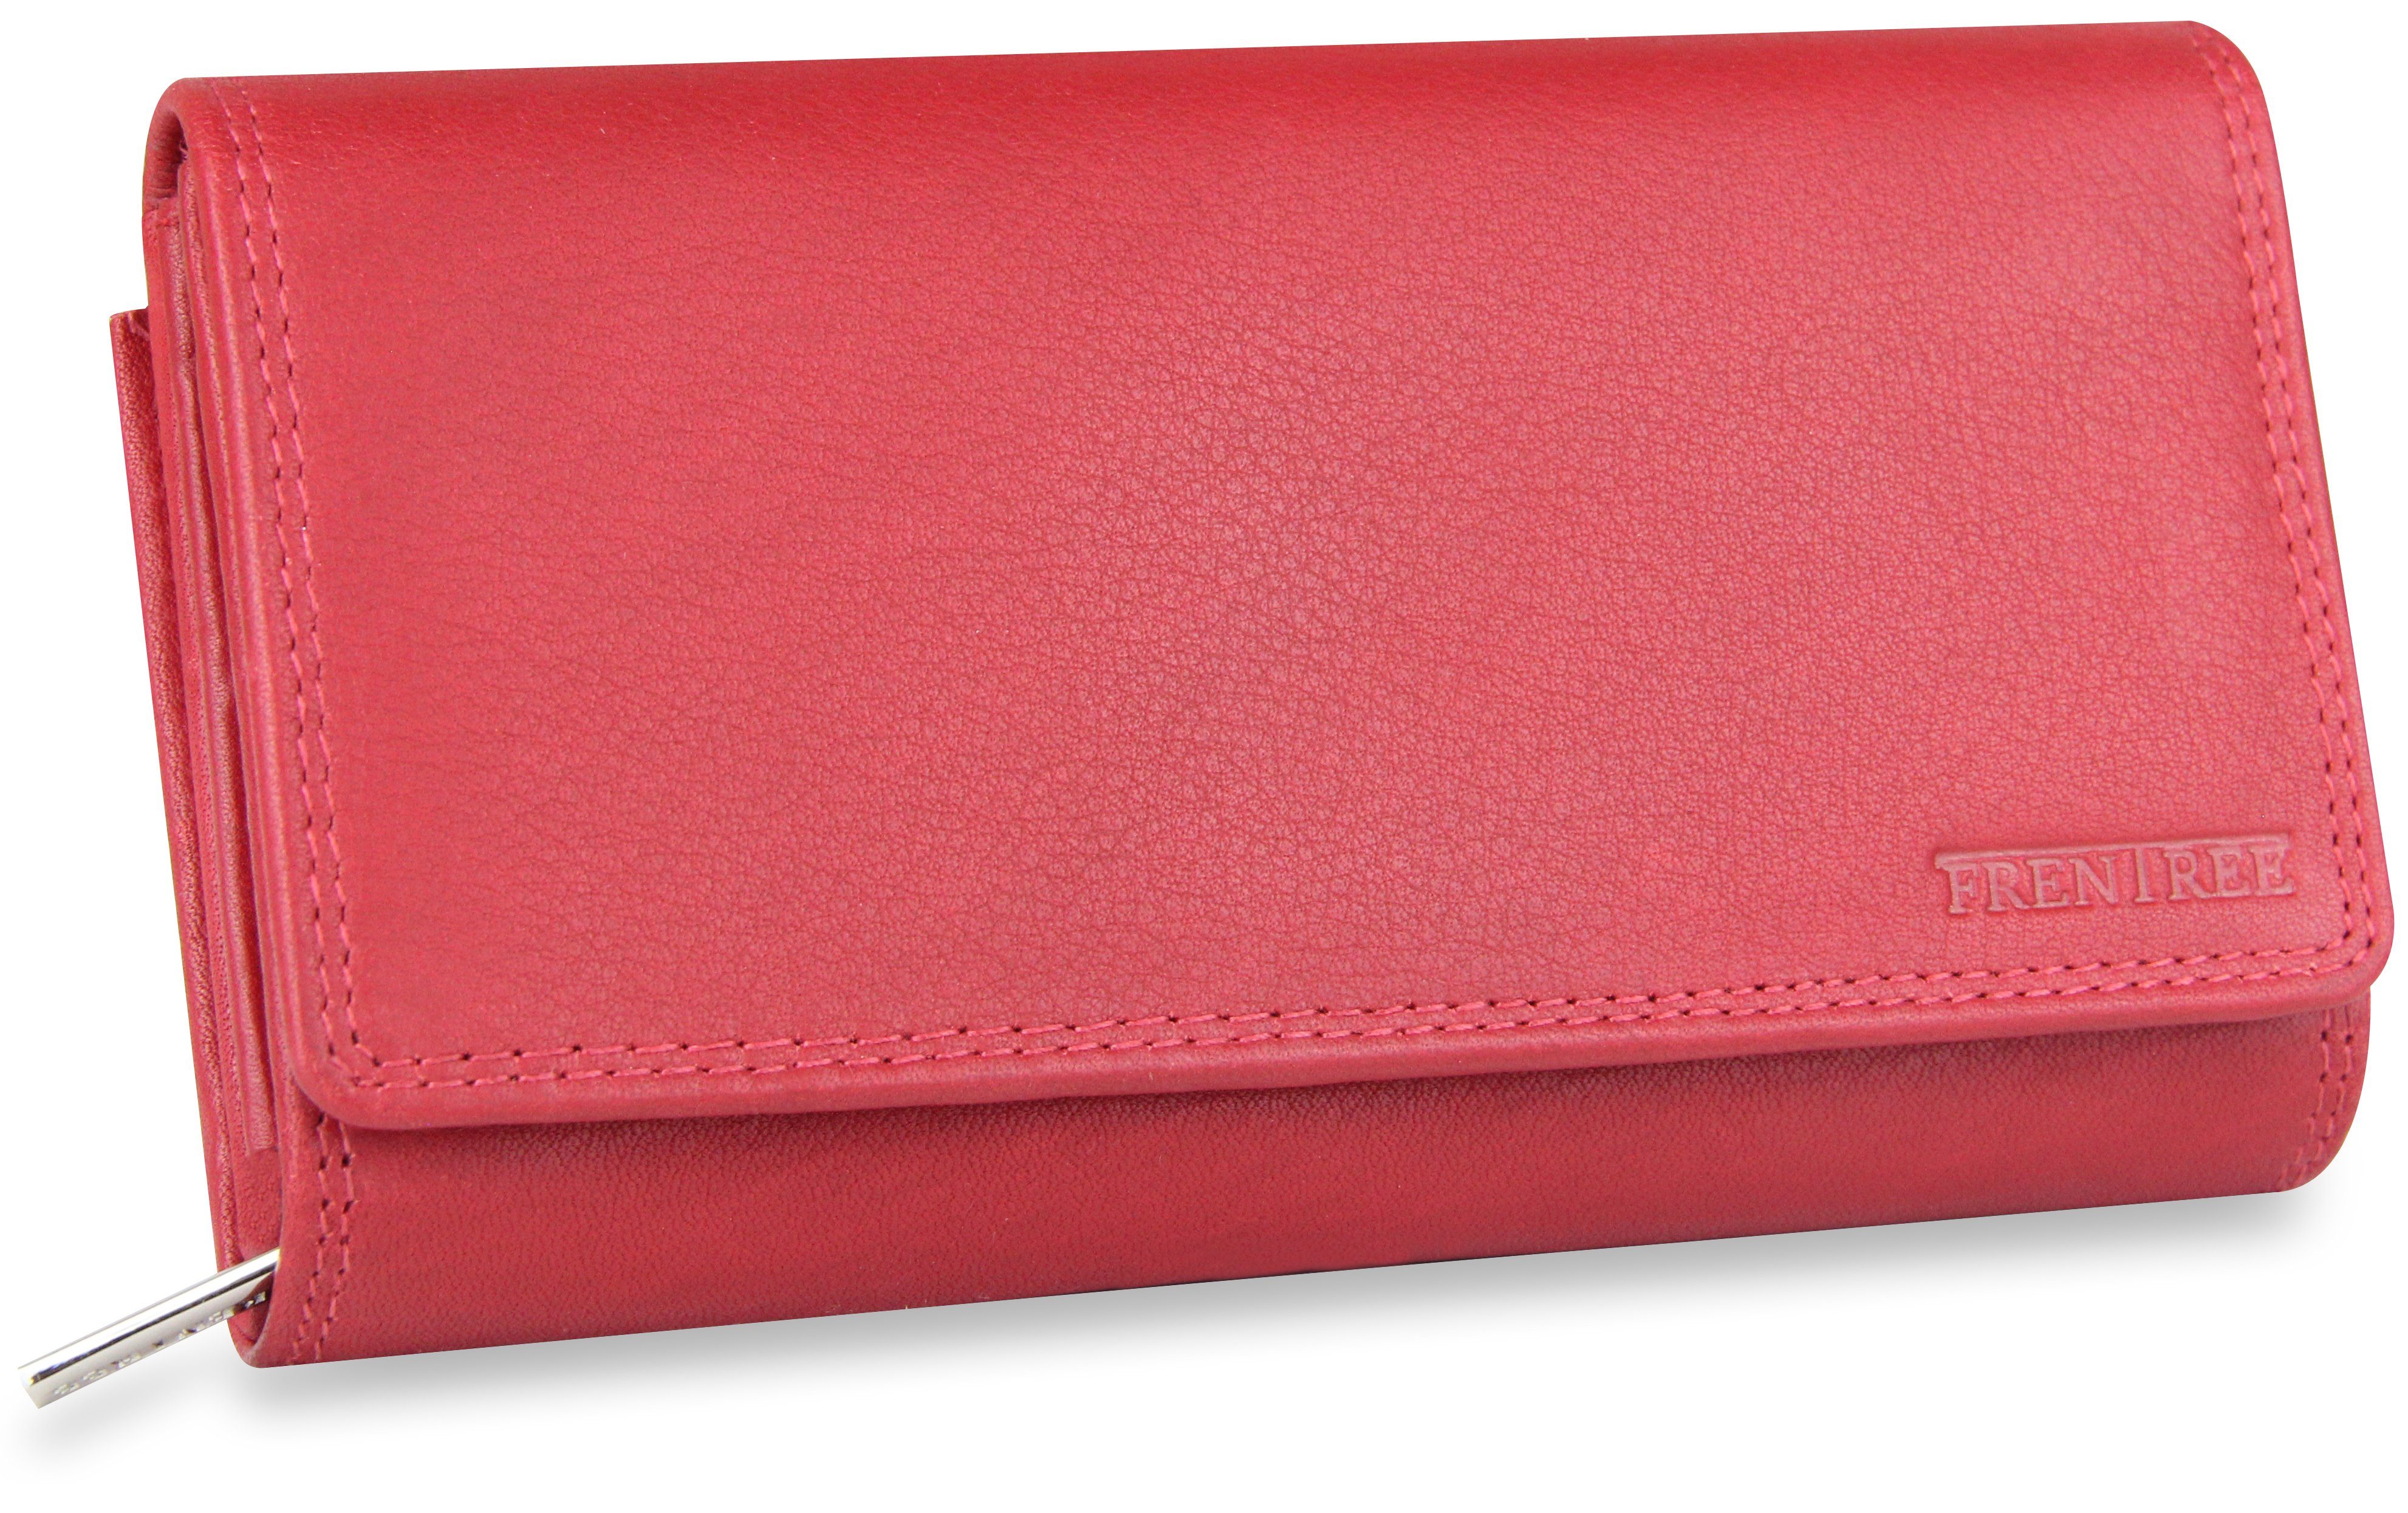 Frentree Geldbörse Damen Portemonnaie aus echtem Nappaleder mit vielen Fächern und, und RFID-Schutz, großes Echt Leder Portemonnaie Rot